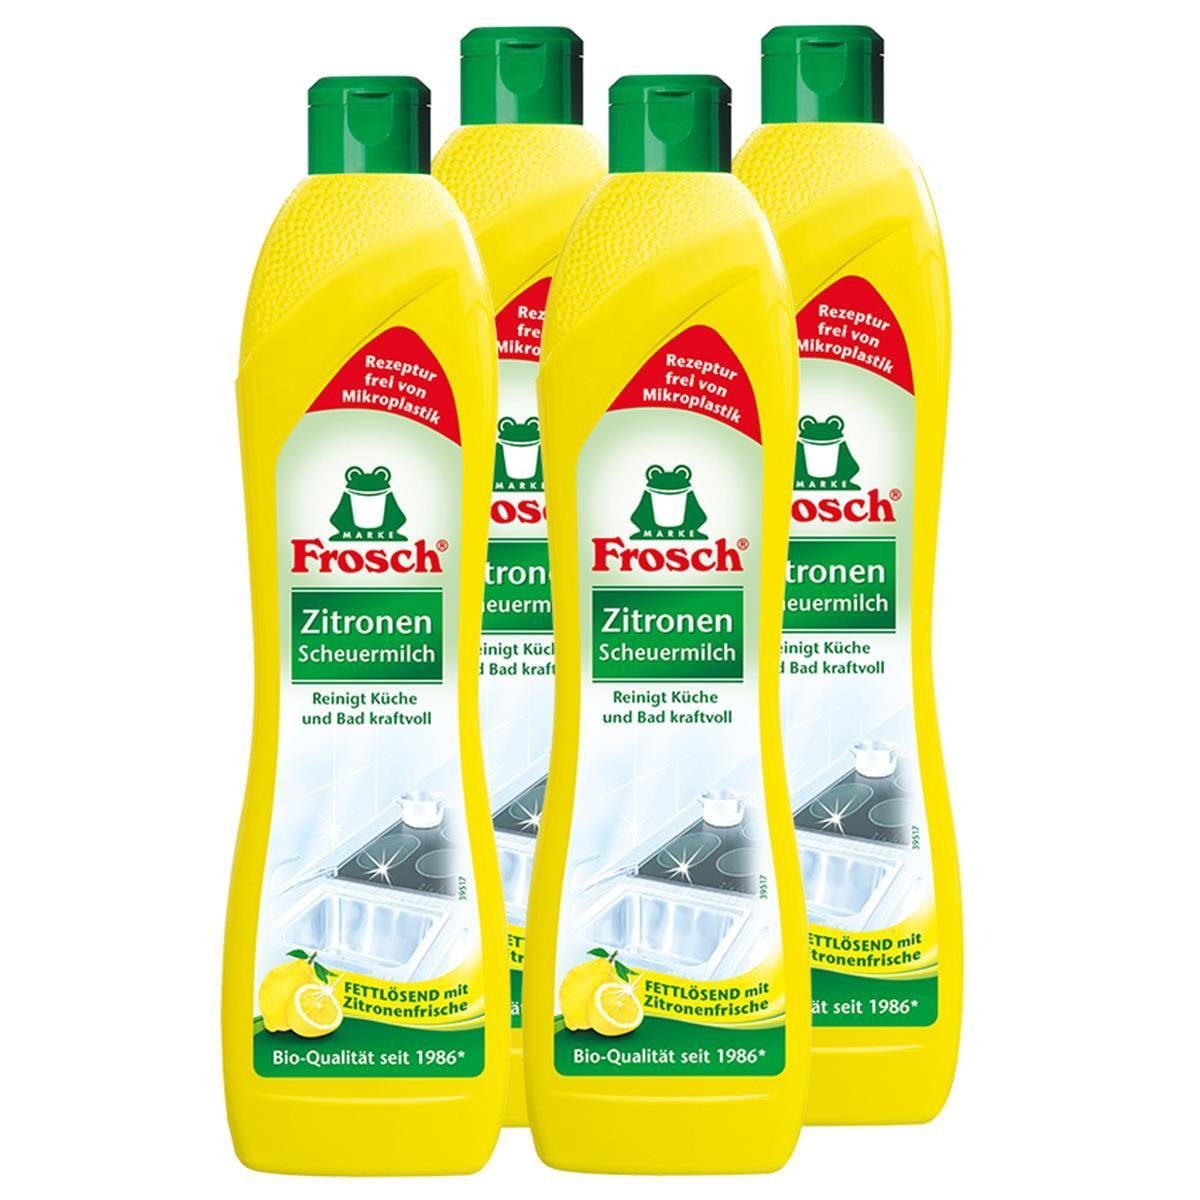 FROSCH 4x Frosch Zitronen Scheuermilch 500 ml – Reinigt Bad und Küche kraftvo Spezialwaschmittel